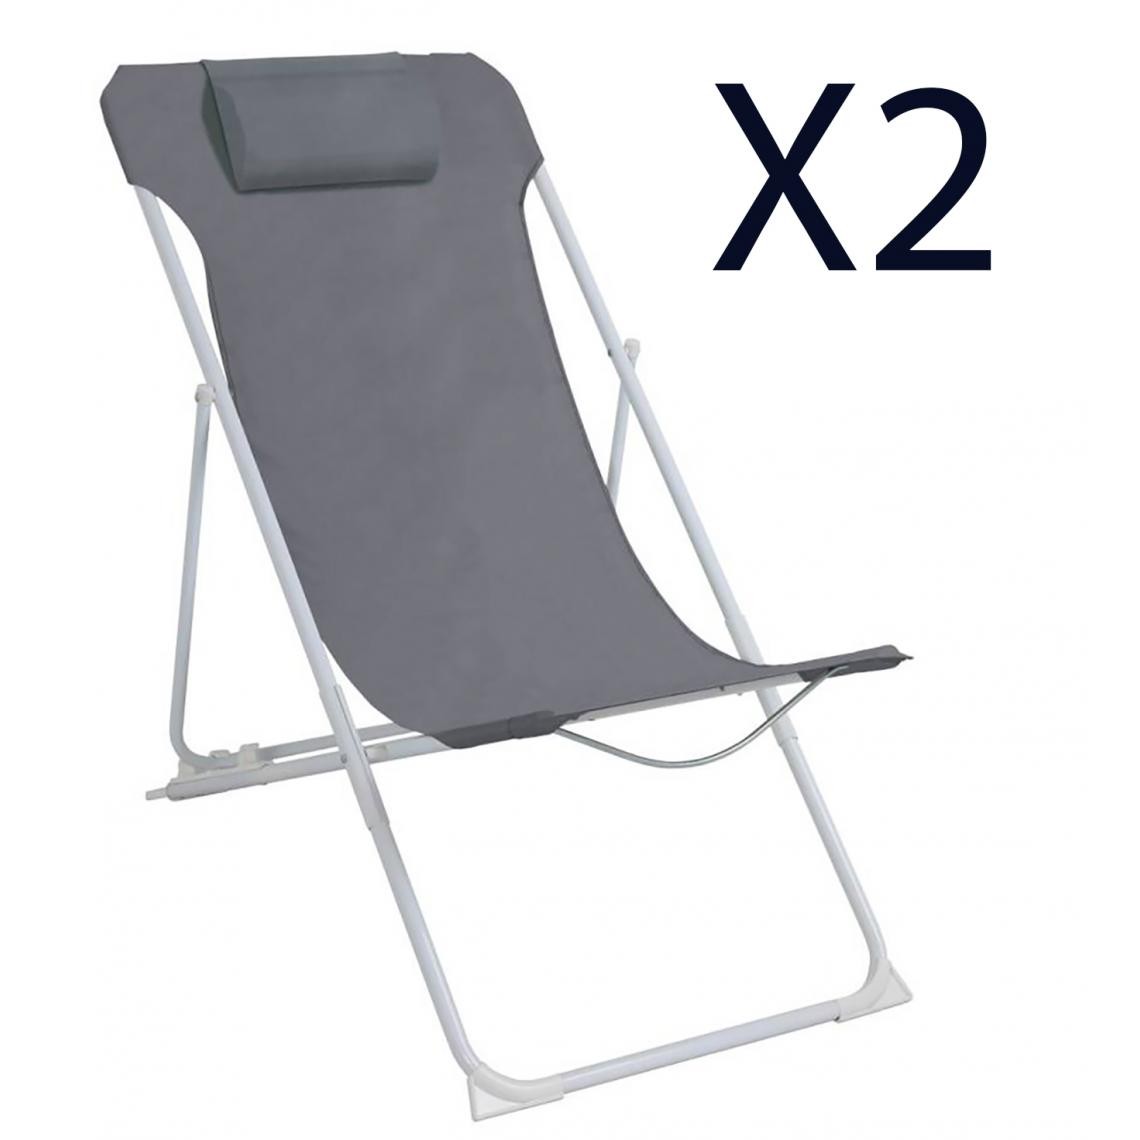 Pegane - Lot de 2 chaises longues pliantes 3 positions avec coussin en acier blanc et polyester gris - Longueur 56 x Profondeur 84 x Hauteur 75-91 cm - Chaises de jardin